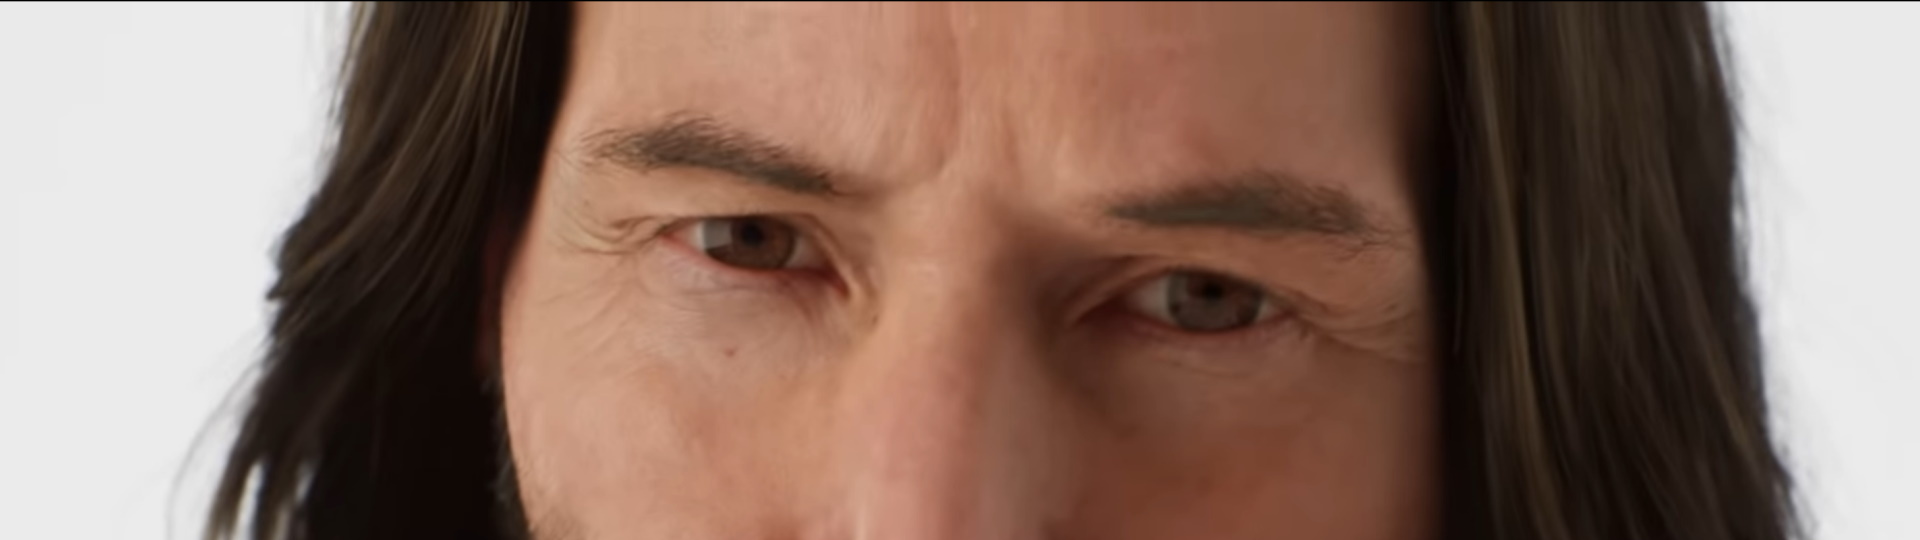 Keanu Reeves zve na nevšední zážitek s Matrixem a Unreal Engine 5 | Novinky